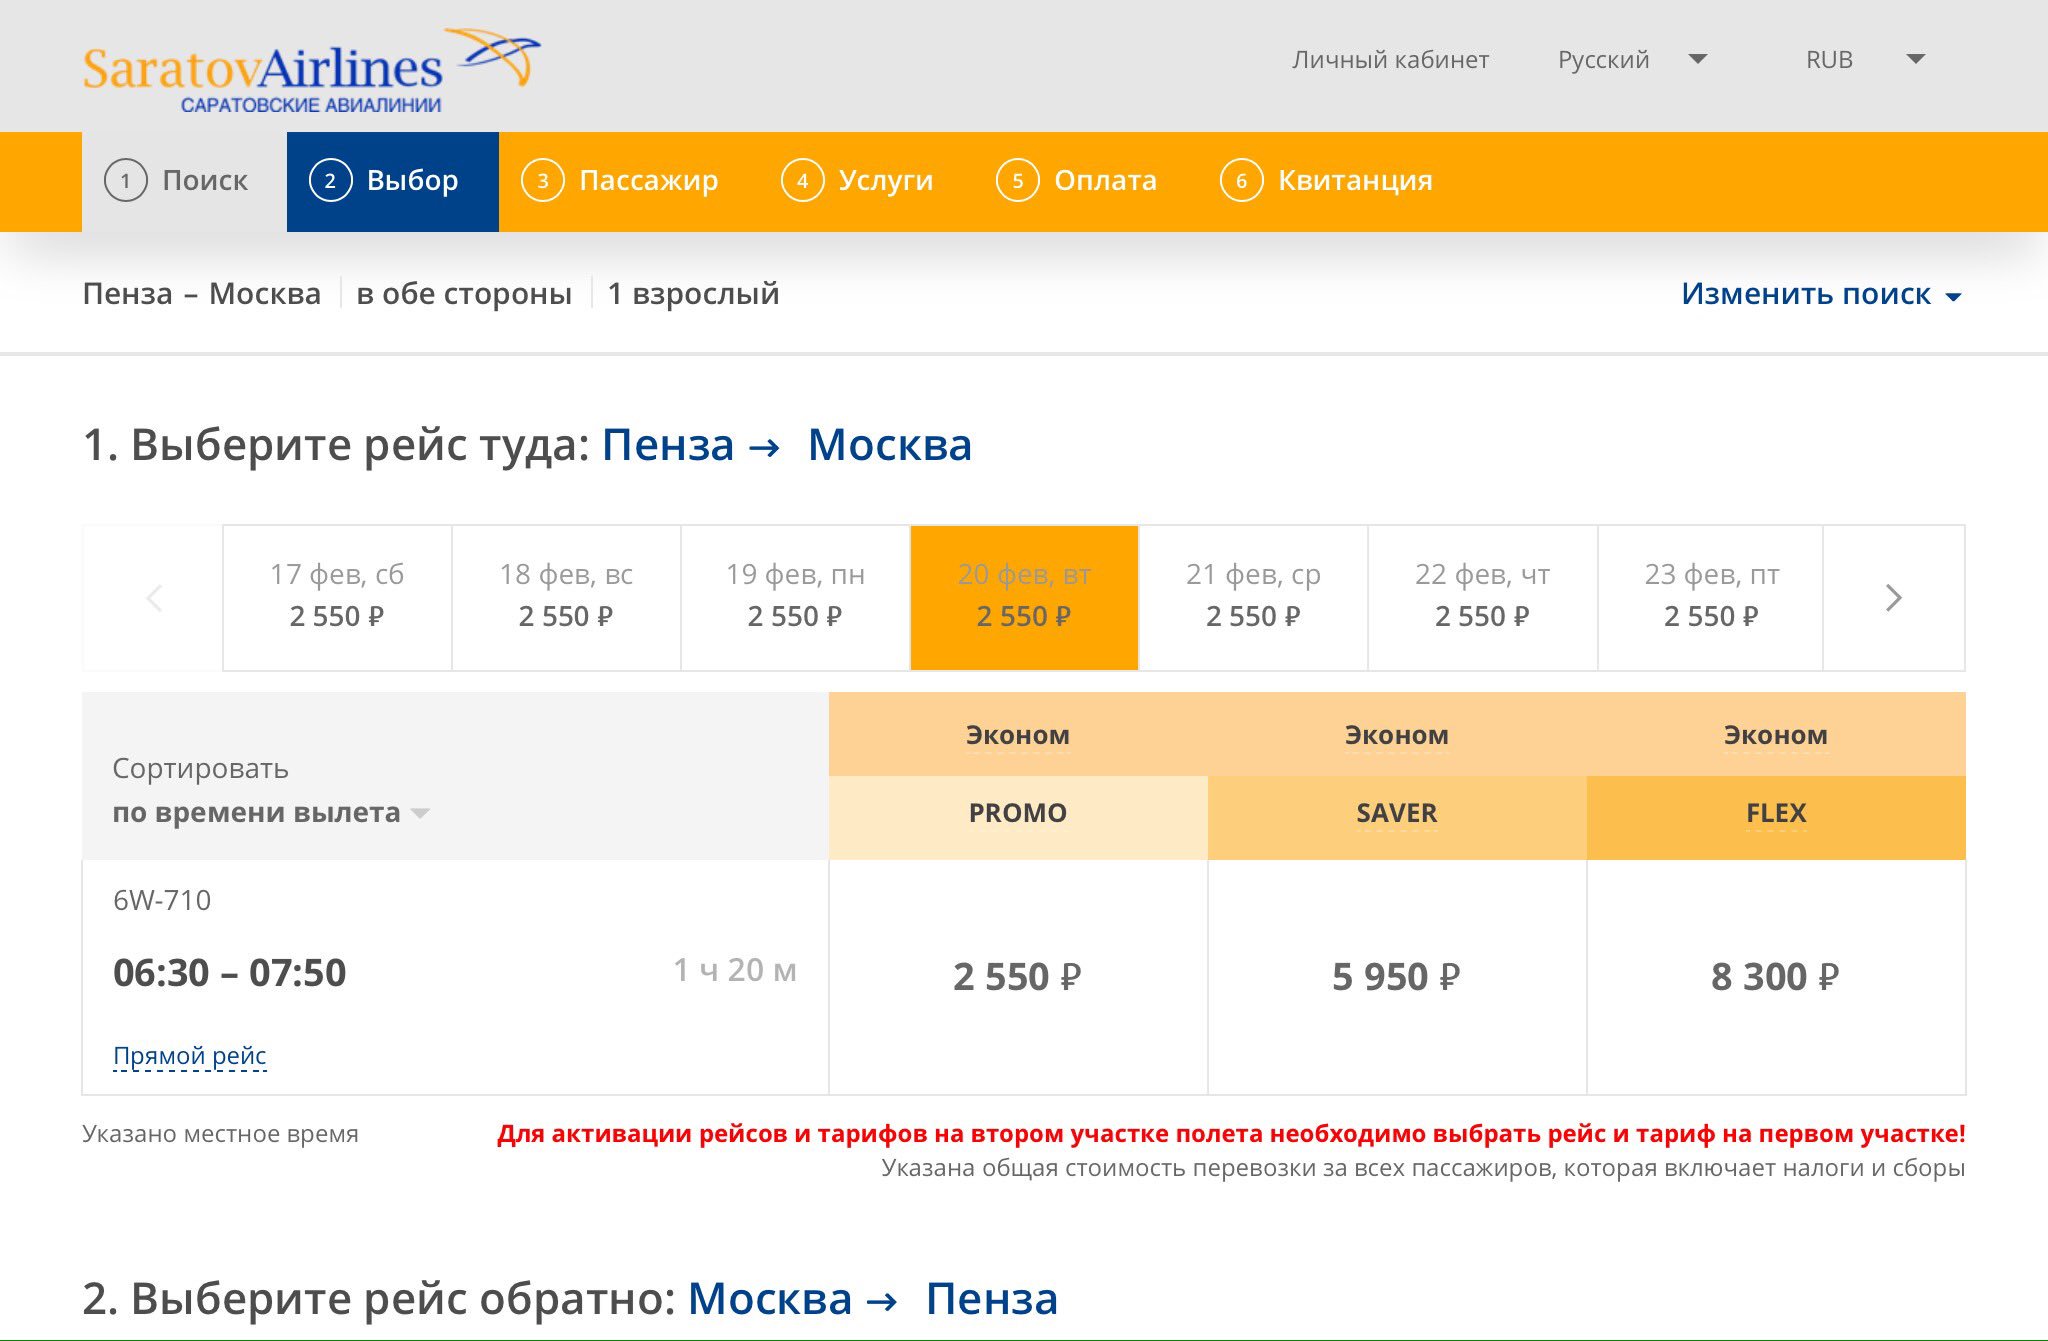 Самолет пенза москва стоимость билета дешевые авиабилеты в узбекистан бухара